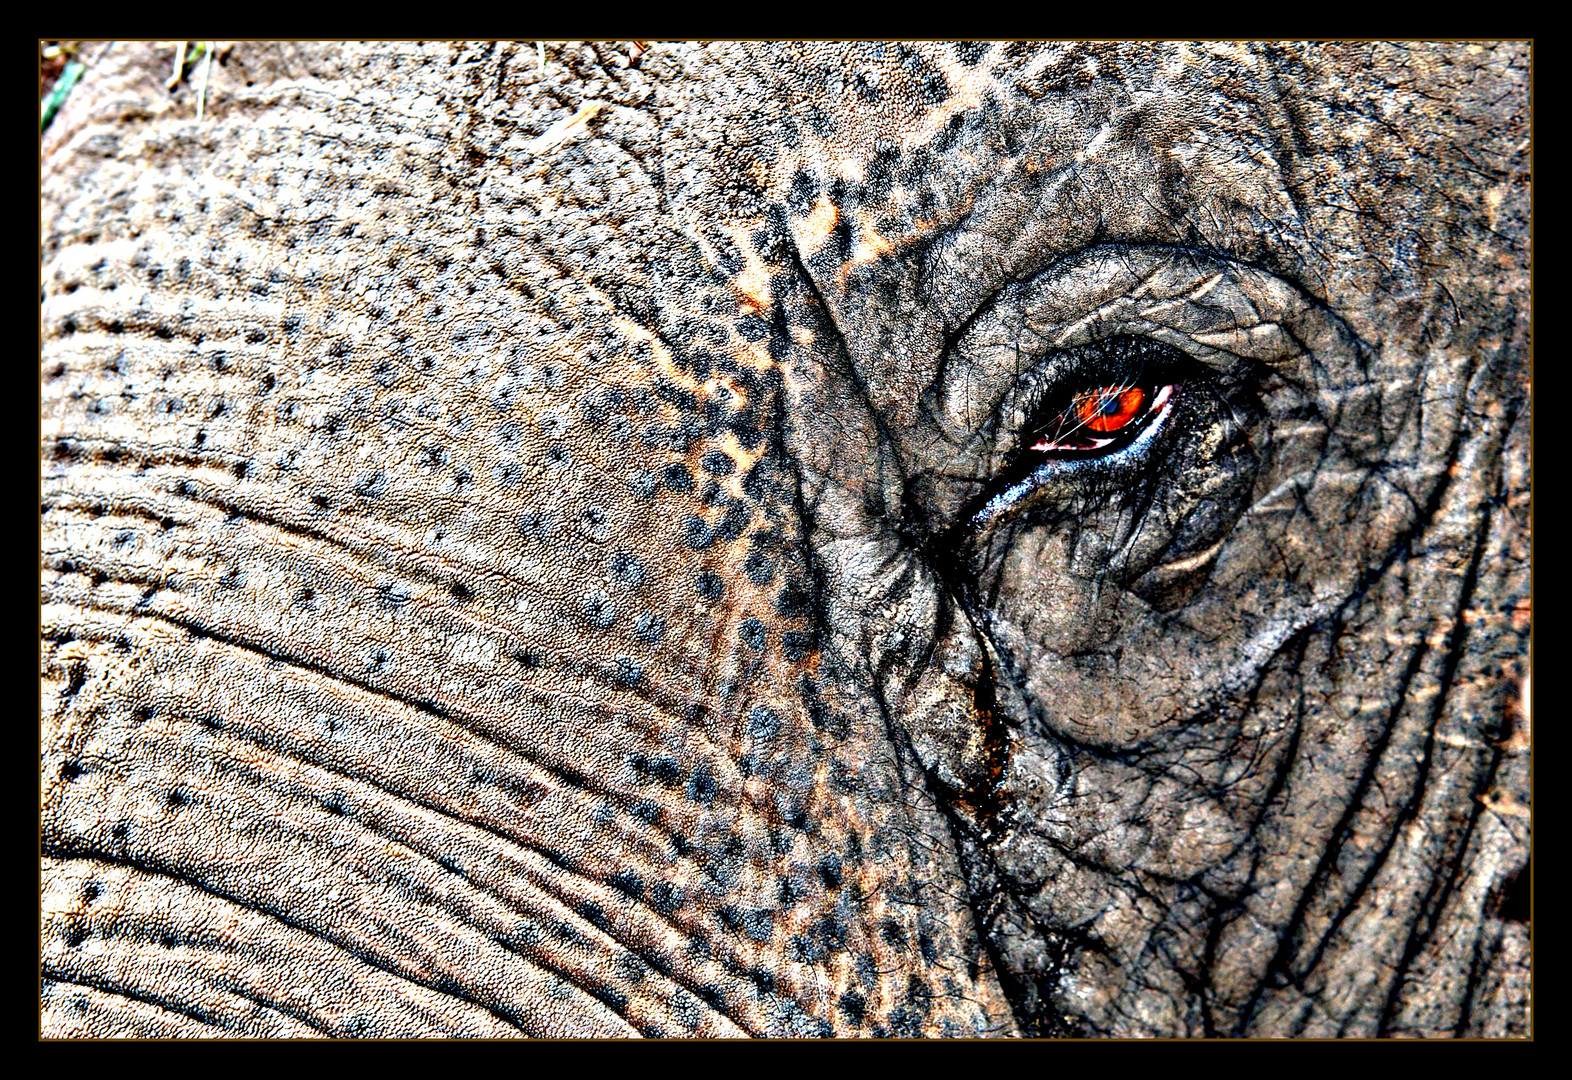 Das Auge des Elefanten